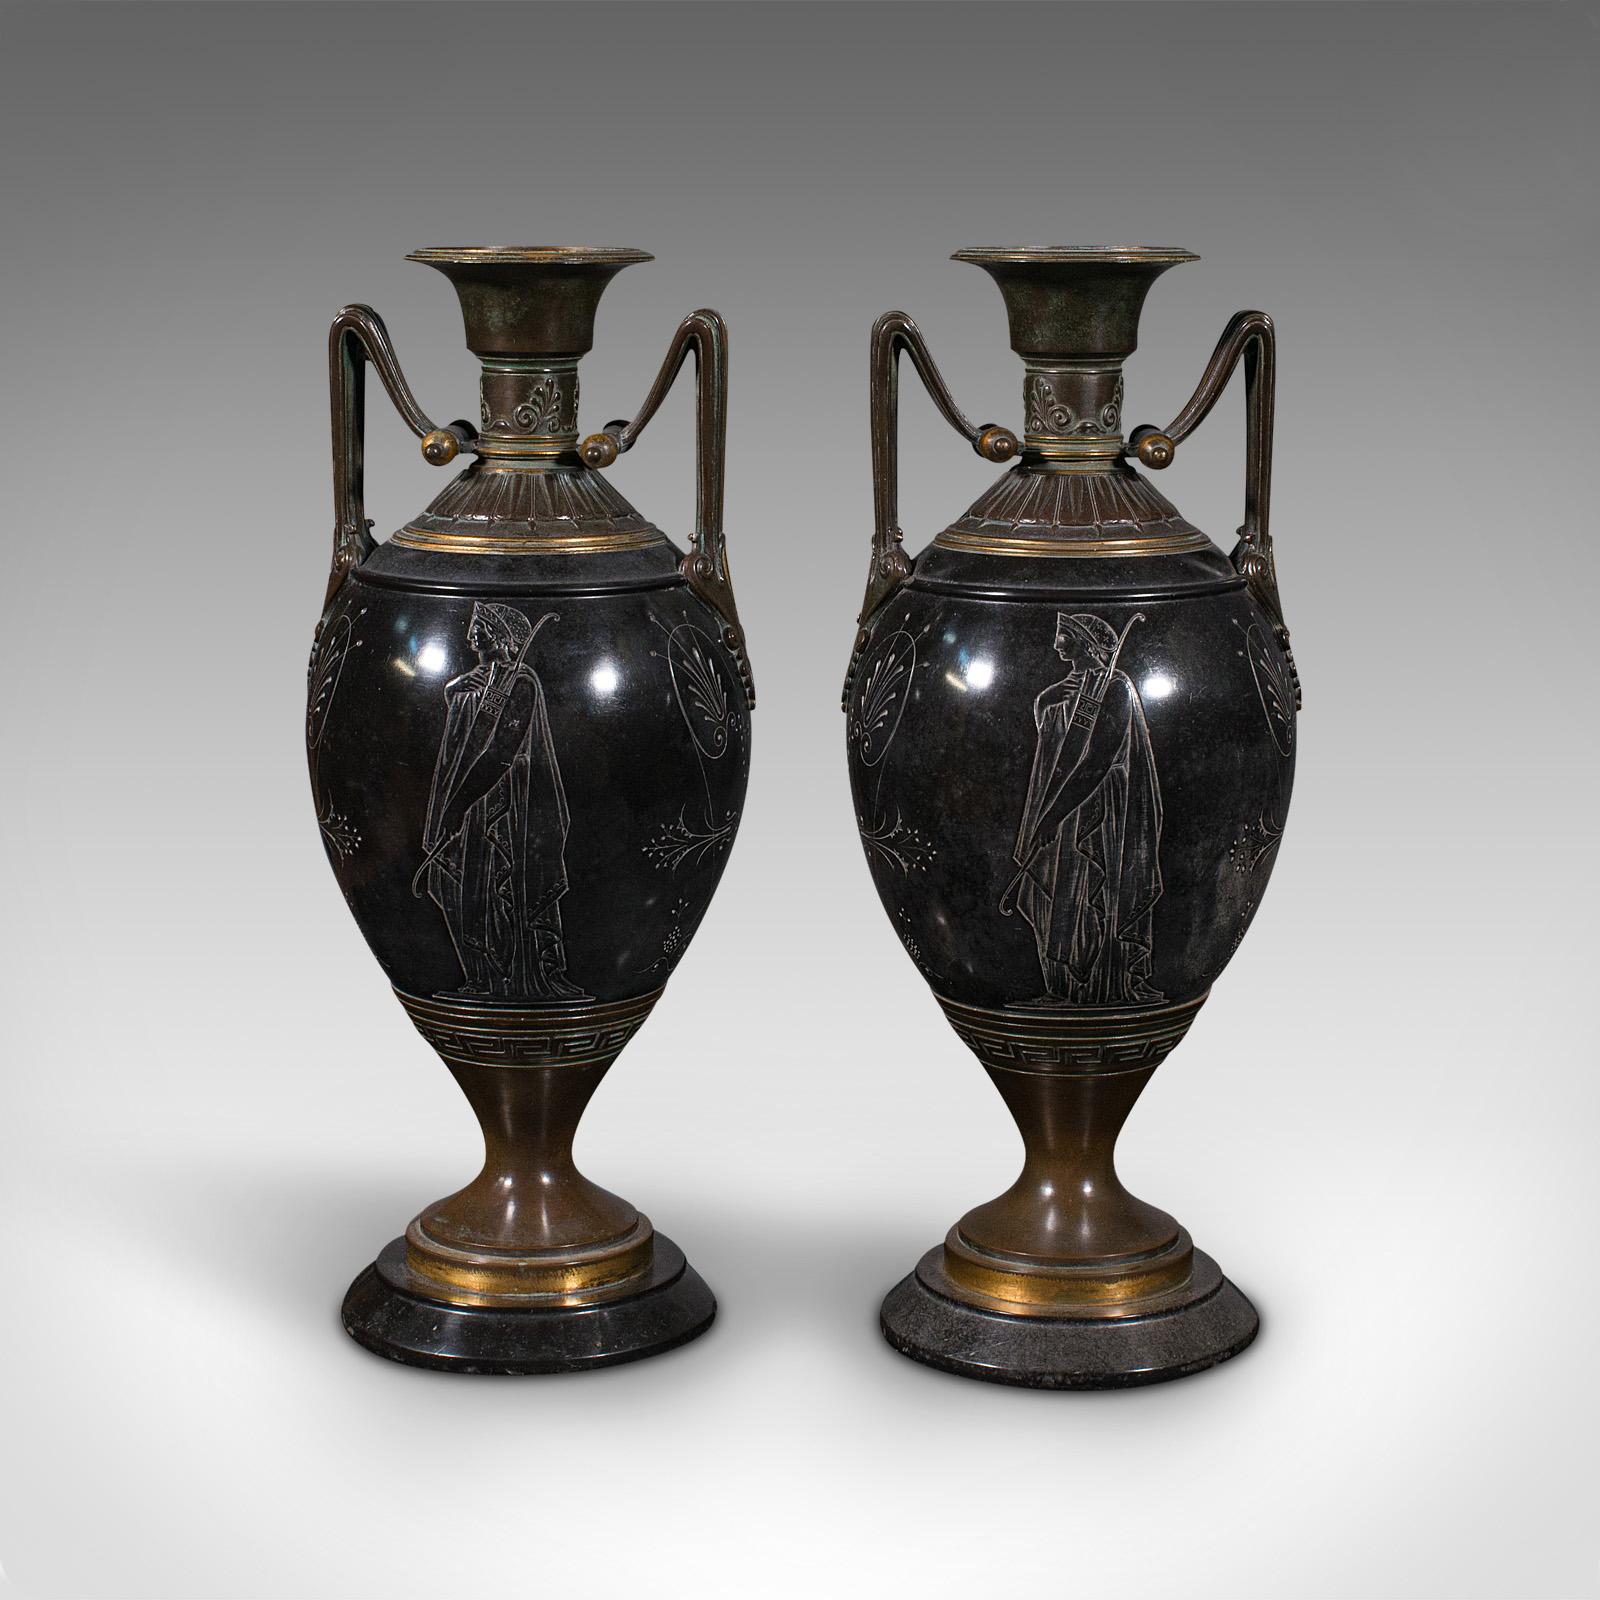 Pair of Antique Display Vases, Italian, Marble, Decorative Urn, Grand Tour, 1870 1